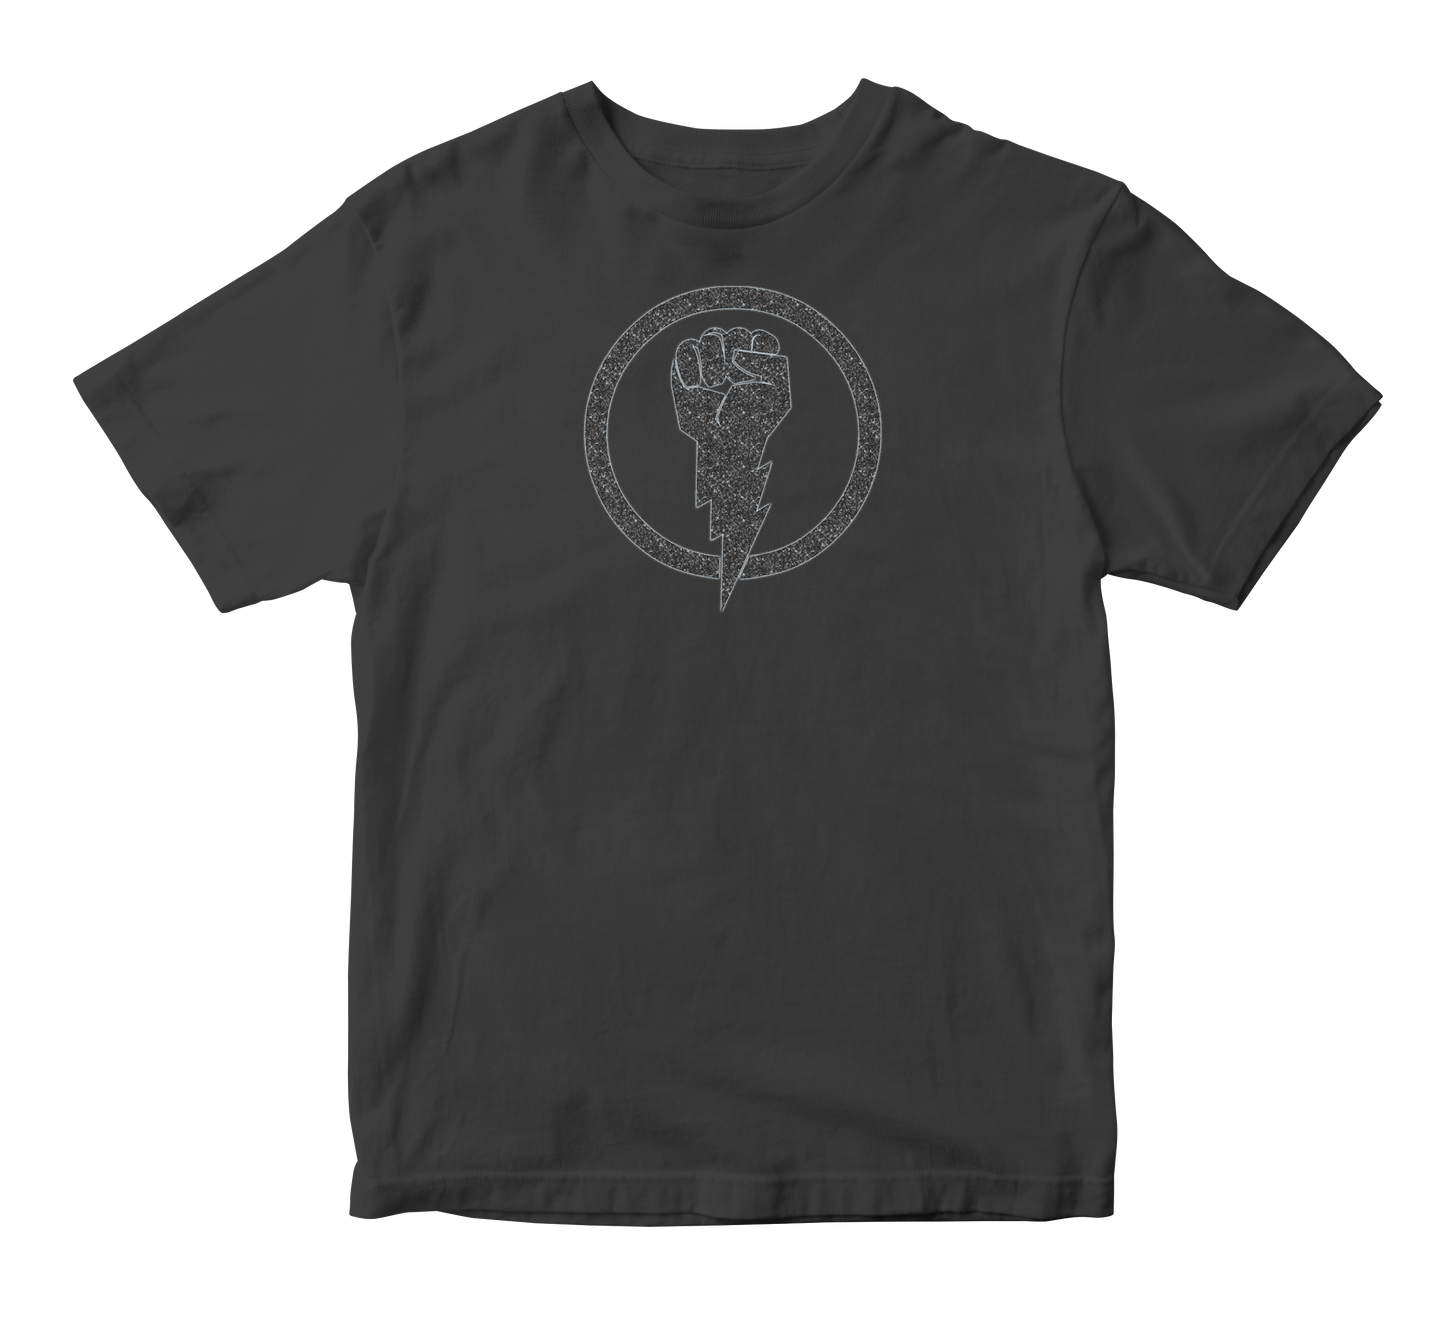 Urban Innovators "Black Lightning" Short Sleeve T-shirt